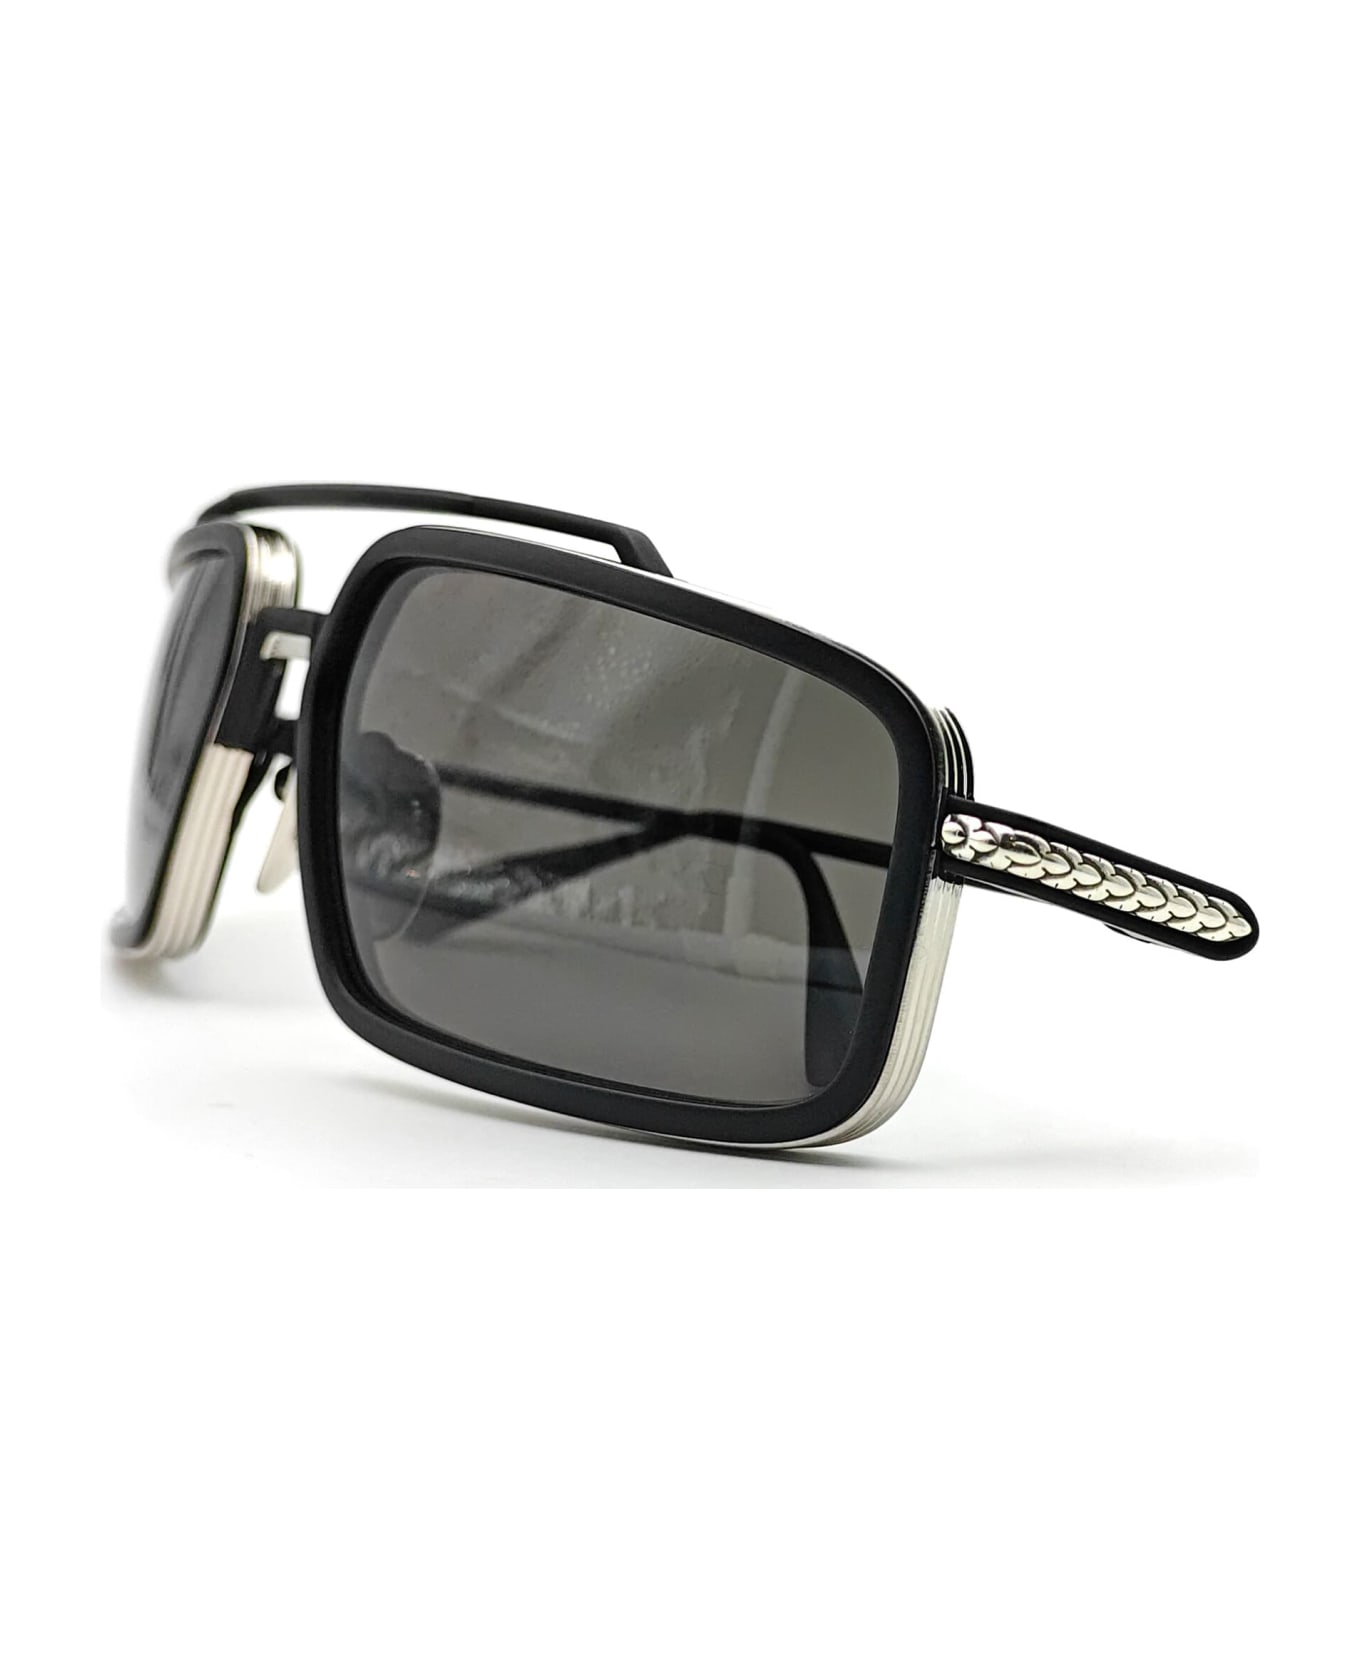 Chrome Hearts Eader - Brushed Silver / Matte Black liam sunglasses - Matte black